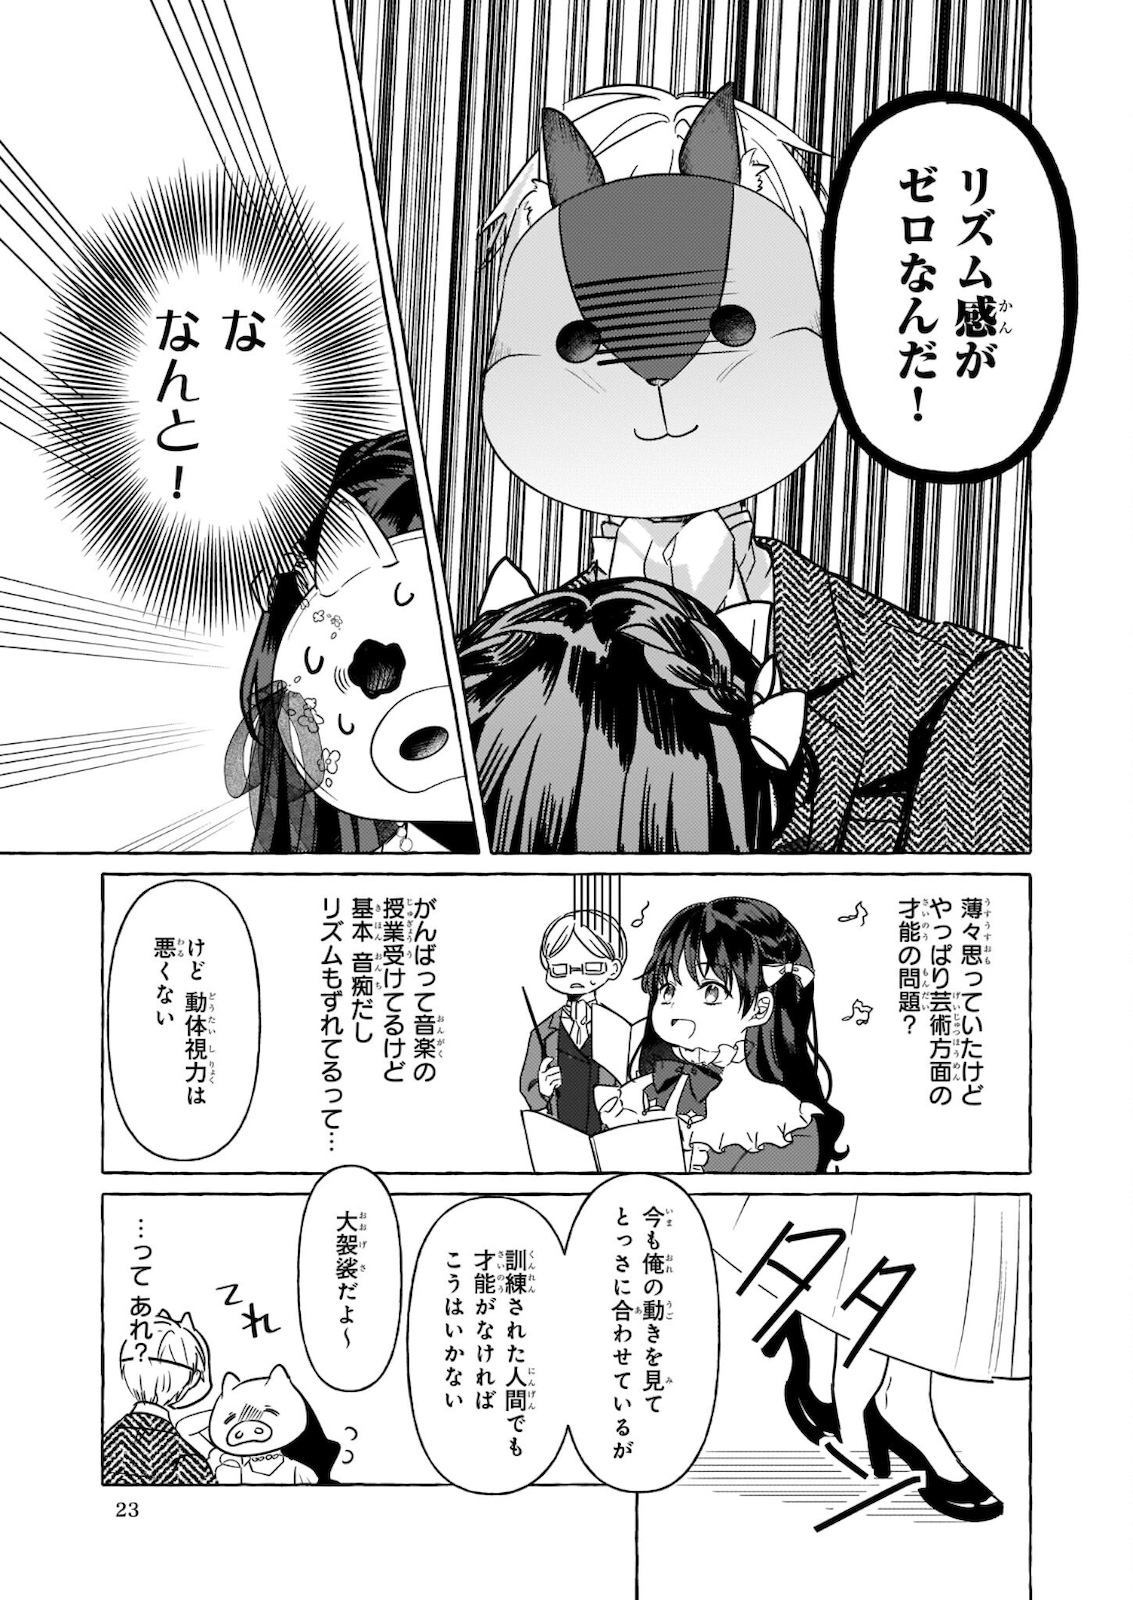 Tenseisaki ga Shoujo Manga no Shirobuta Reijou datta reBoooot! - Chapter 10.2 - Page 17